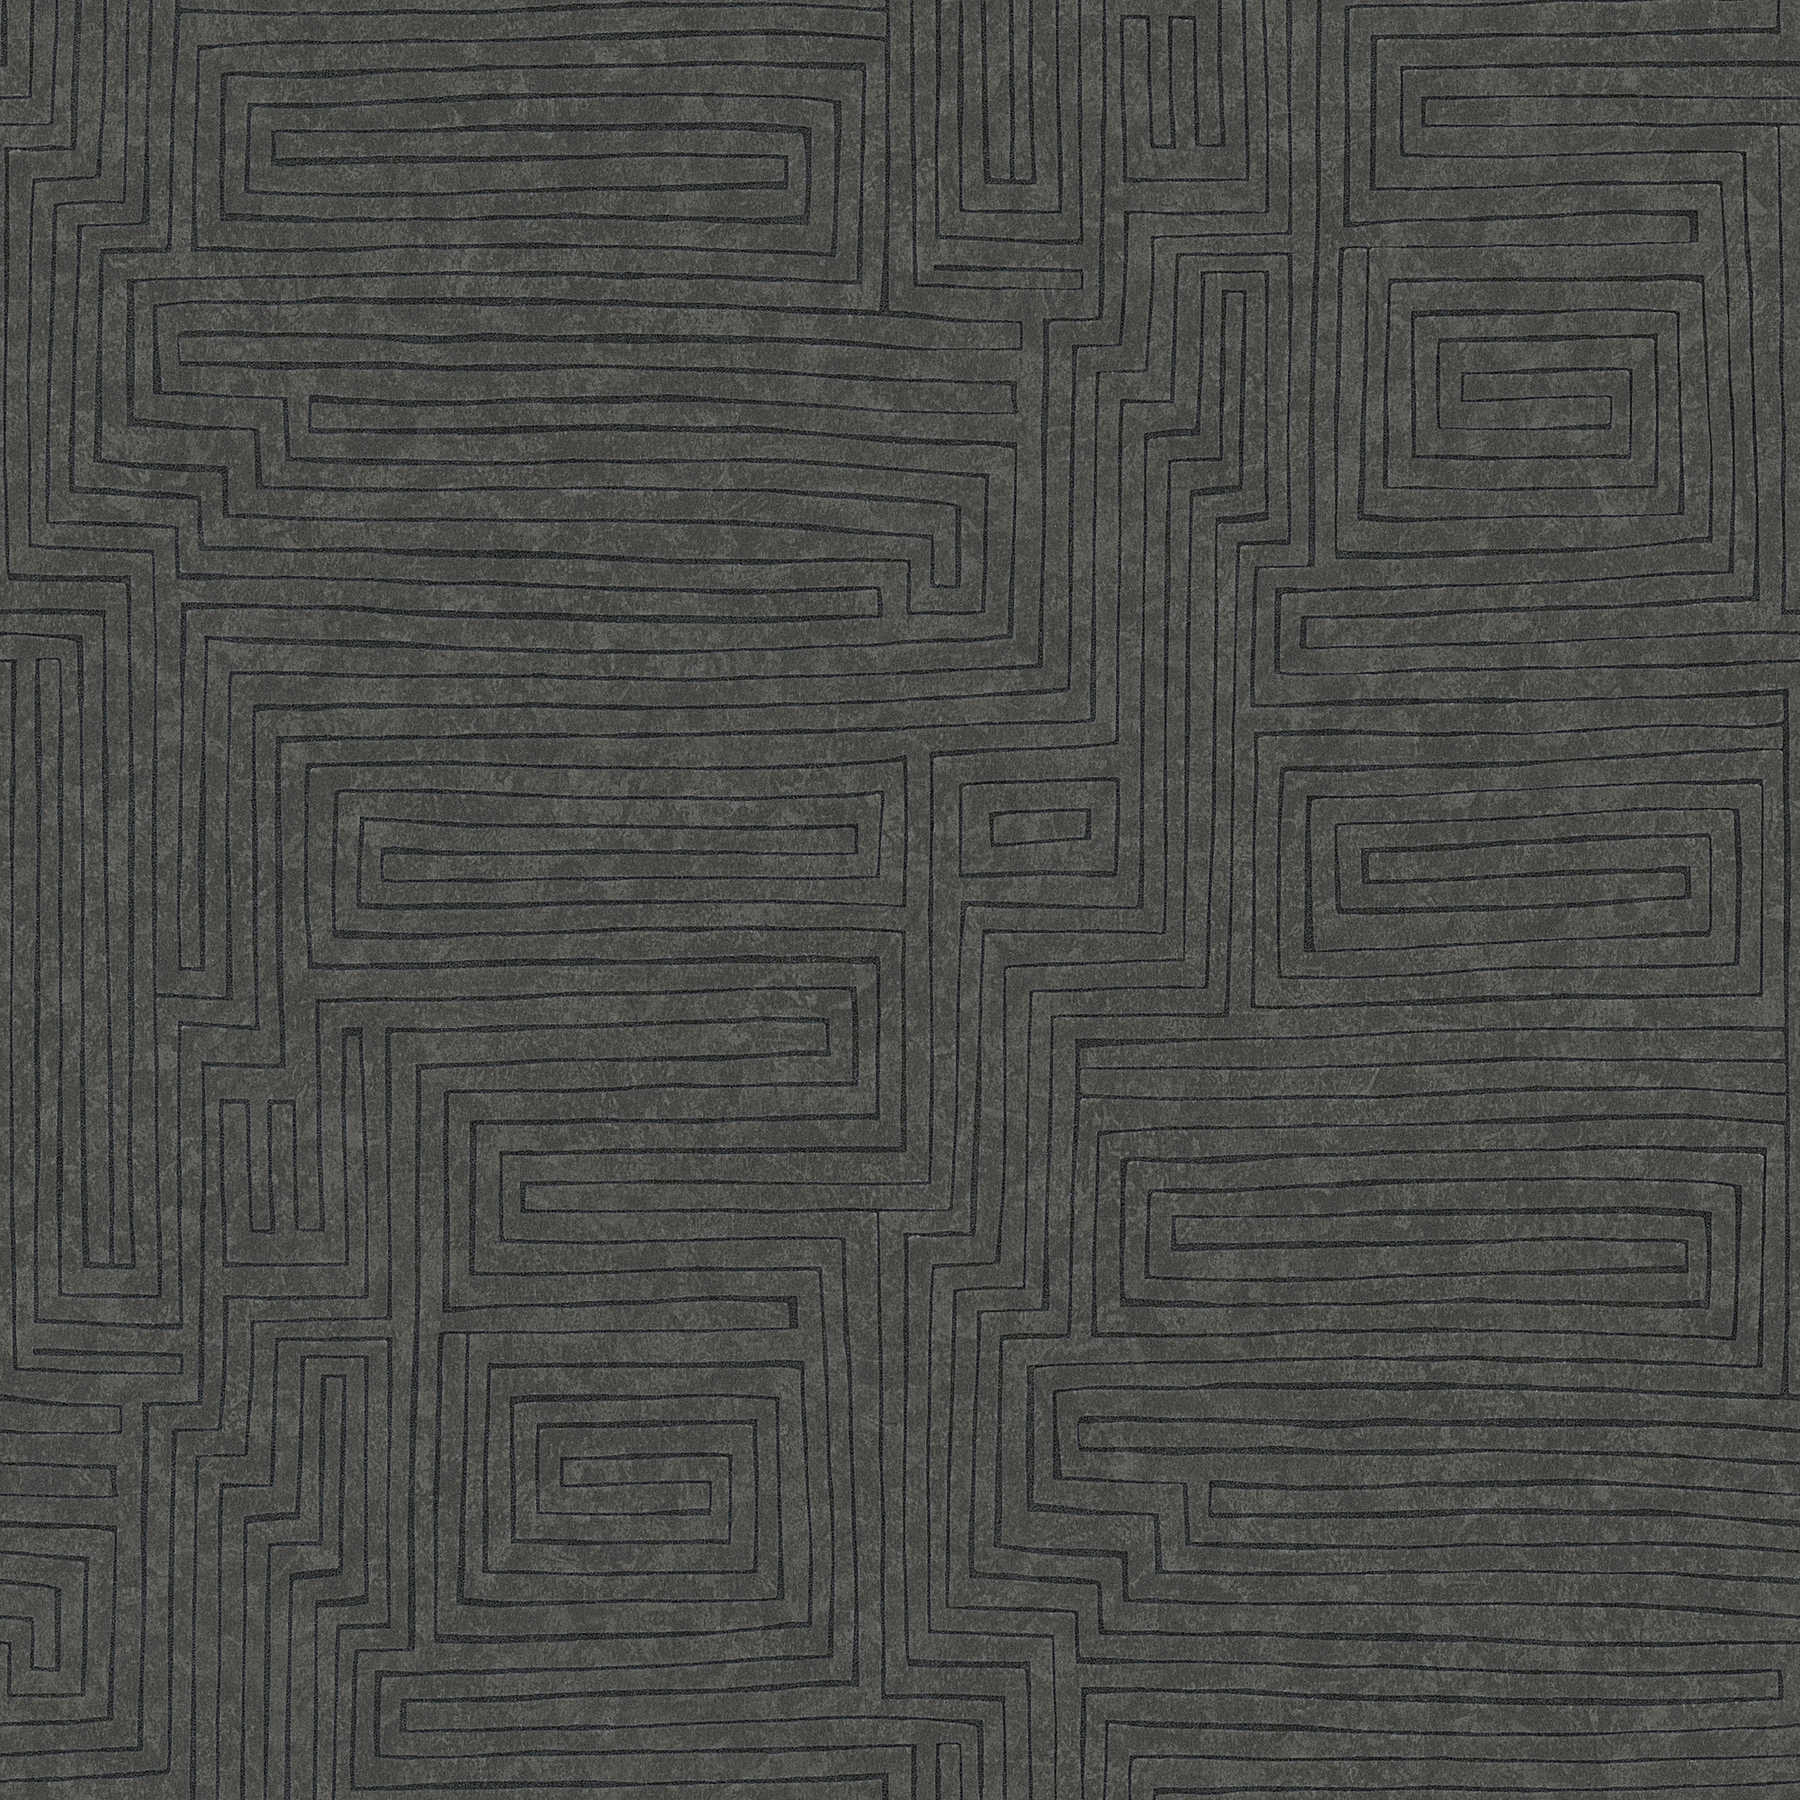 Ethno behang effen met lijnenspel & structuureffect - bruin, zwart
